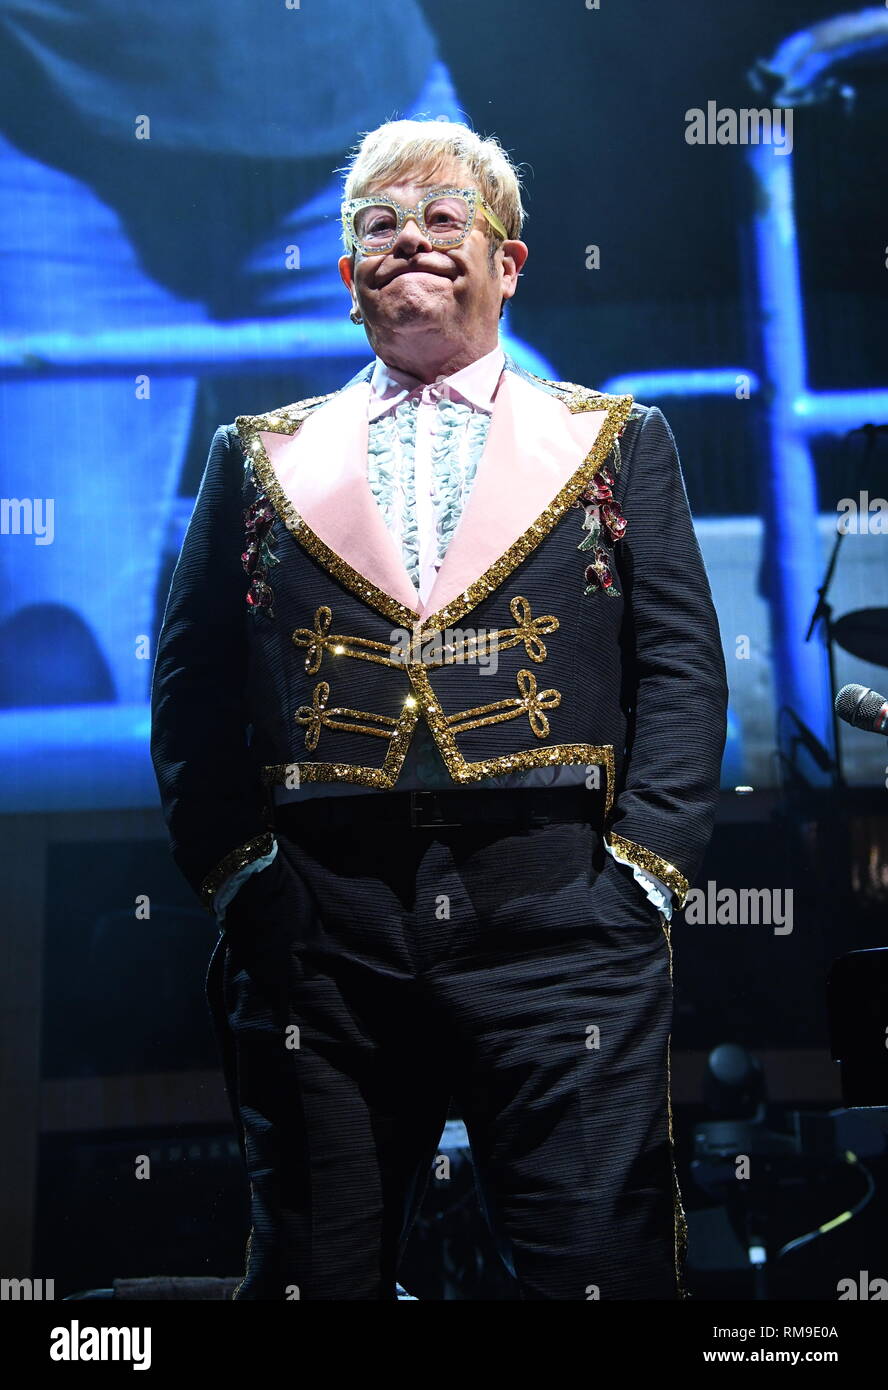 Musicista Elton John è mostrato esibirsi sul palco durante il suo 'addio mattone giallo' concert tour. Foto Stock